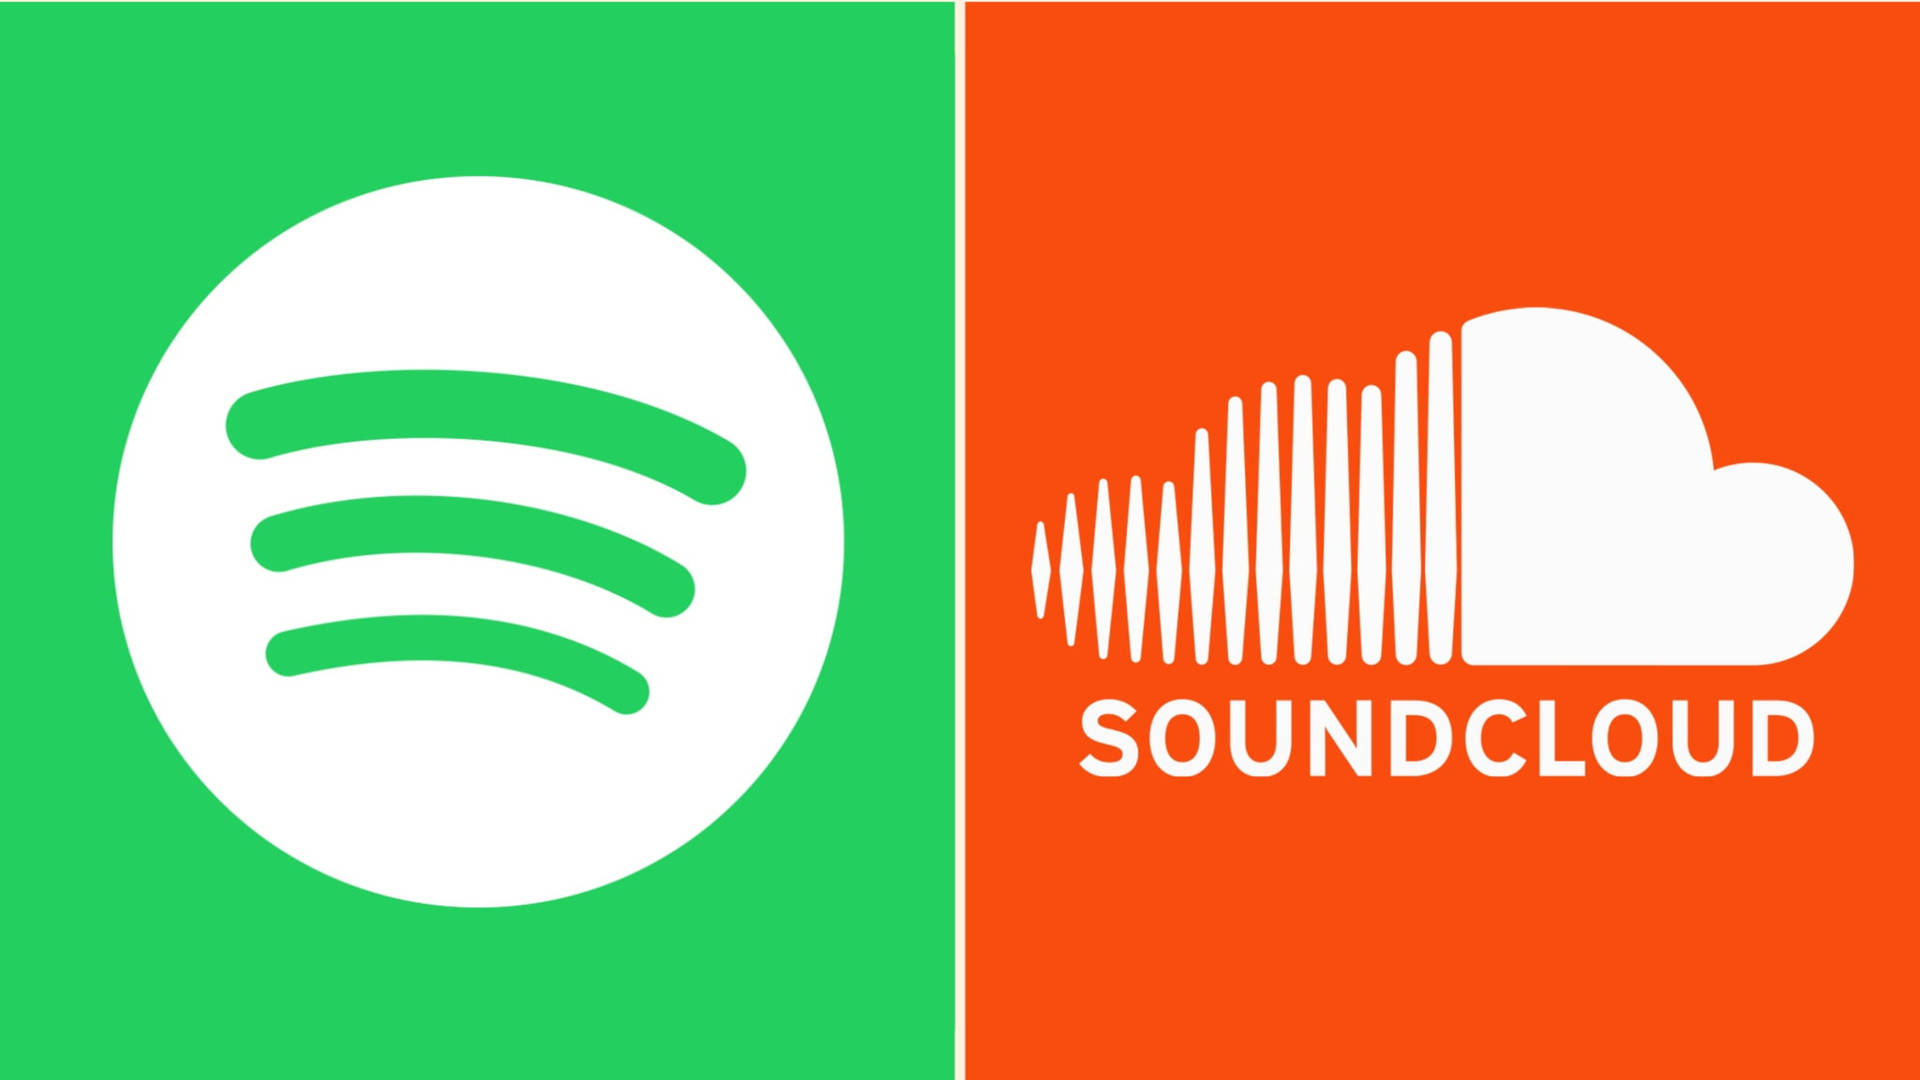 Soundcloud Vs Spotify Music Background